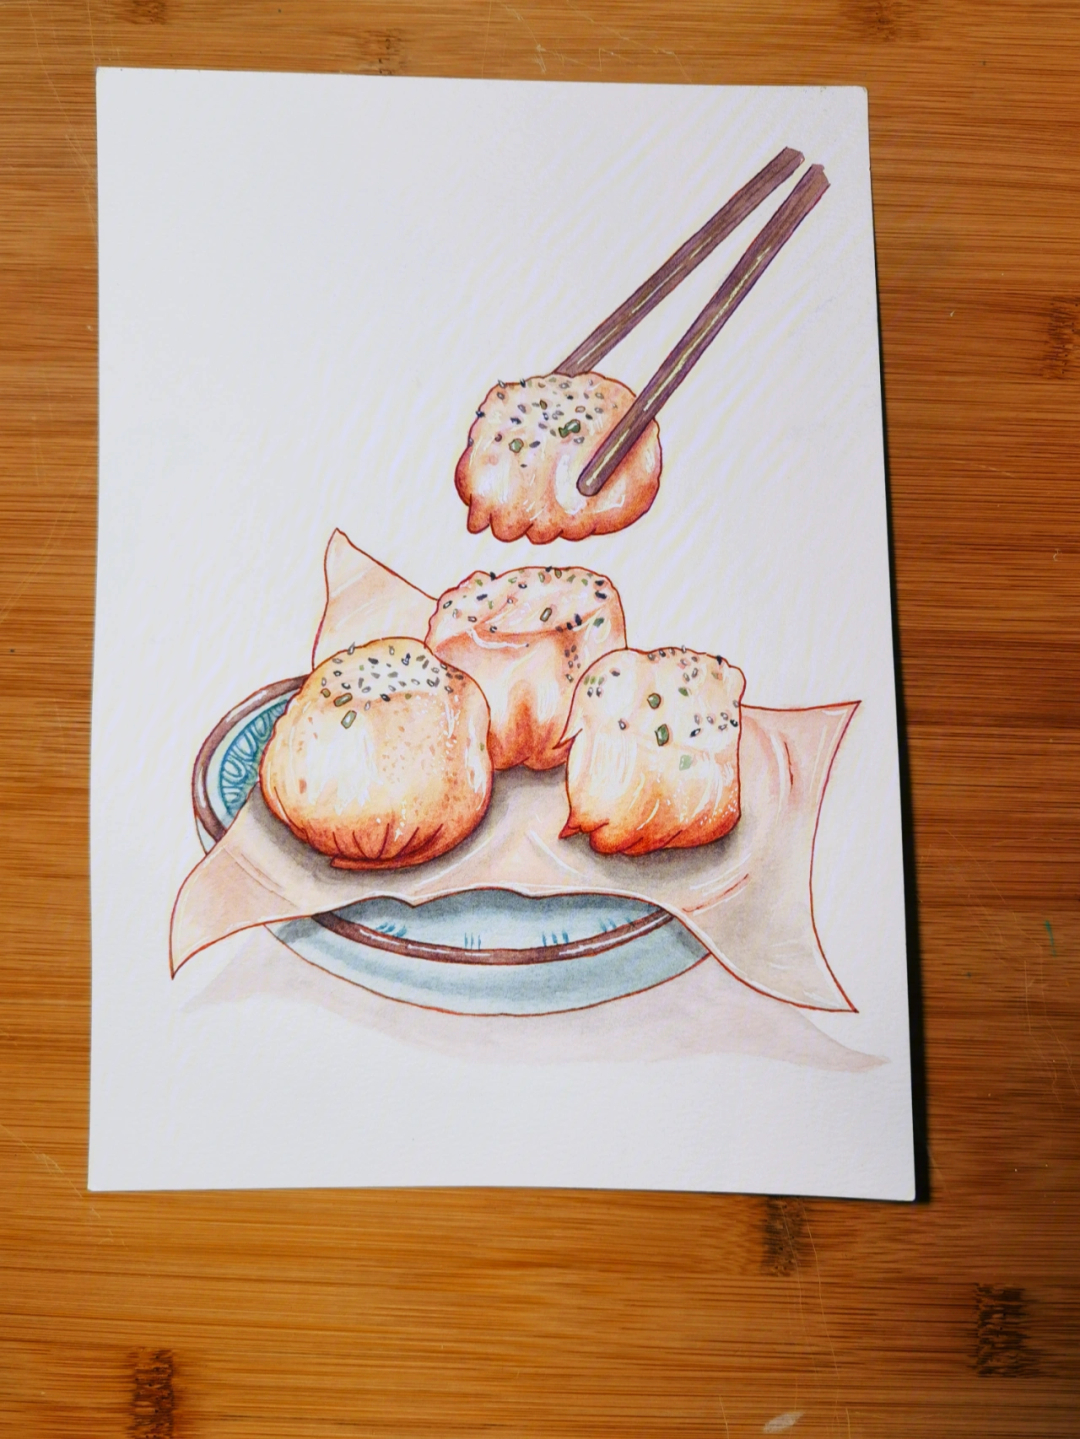 海蛎煎简笔画手绘图片